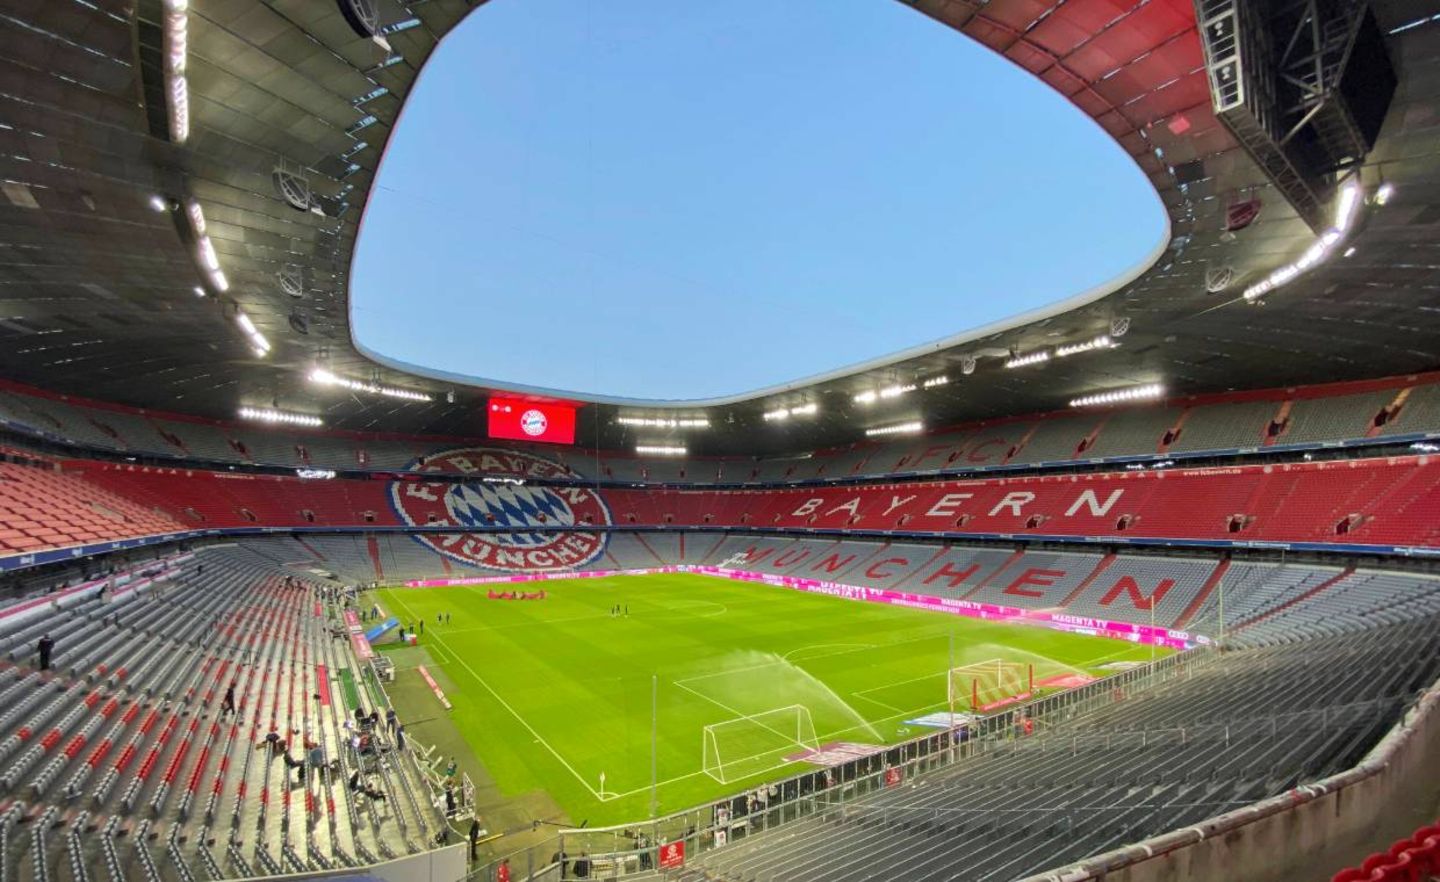 Leeres Stadion in München: Die Folgen der Corona-Krise setzt auch der Bundesliga zu. Bei vielen Clubs ist die Finanzlage angespannt